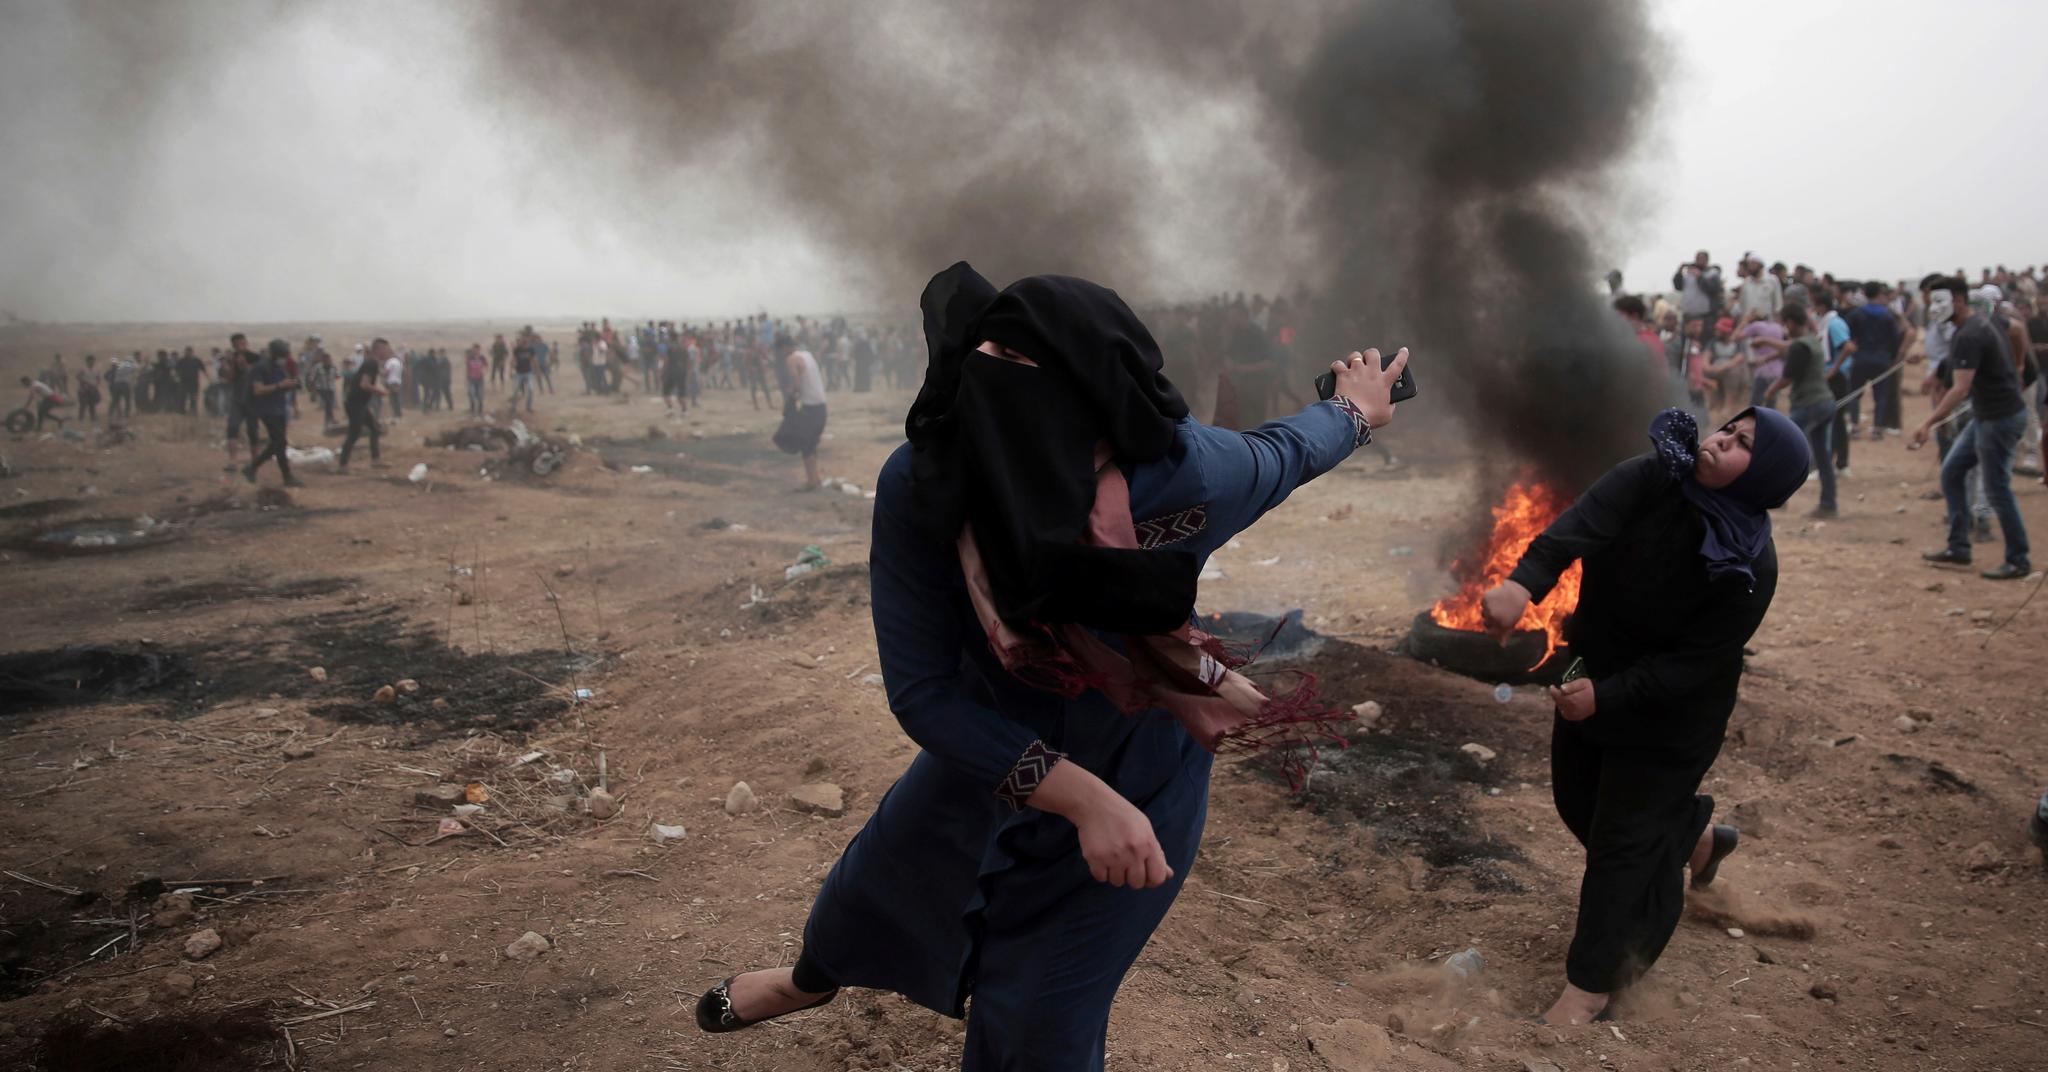  Stadig flere palestinske kvinner har deltatt i de siste protestene på Gaza, observerer Palestinakjenner og stipendiat Erik Skare. Her kaster to kvinner stein mot israelske styrker.